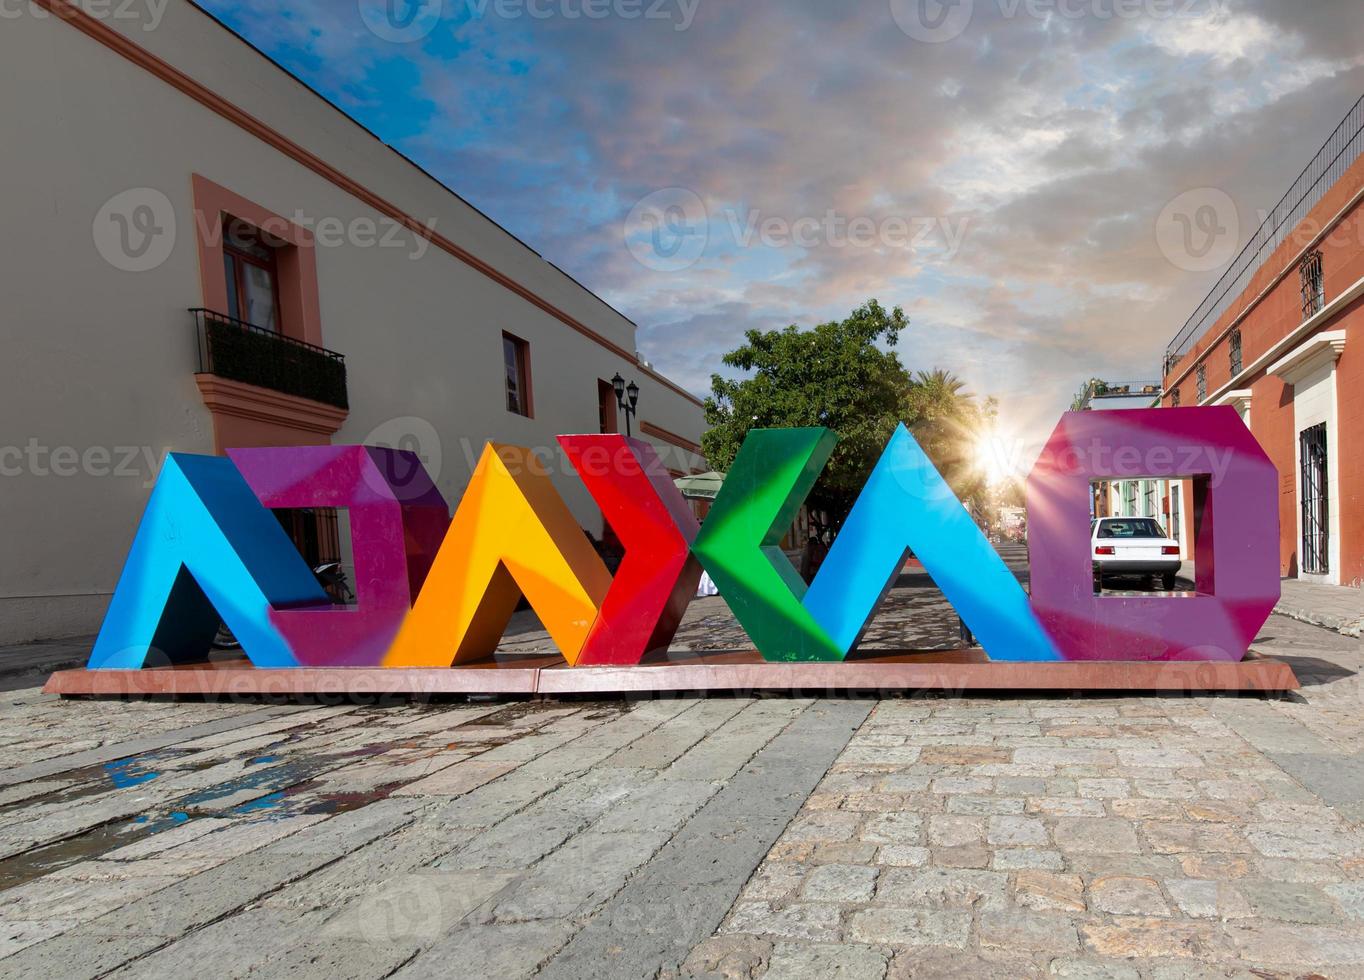 oaxaca, mexico, natursköna gator i gamla stan och färgglada koloniala byggnader i historiska stadskärnan foto